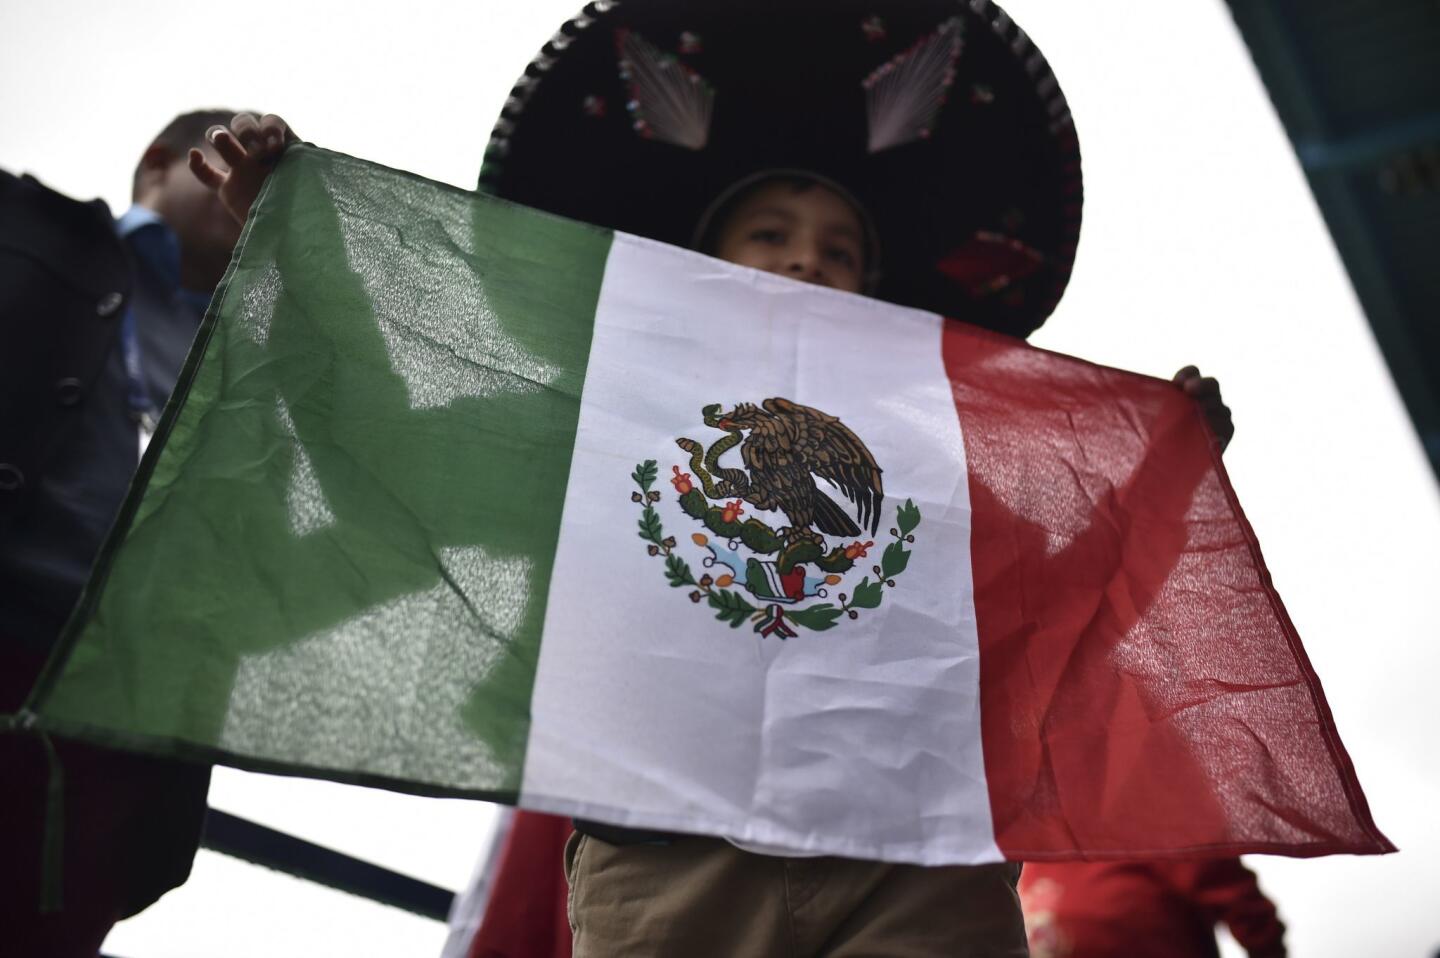 Una oleada de aficionados mexicanos han tomado las calles de Moscú para el Mundial.